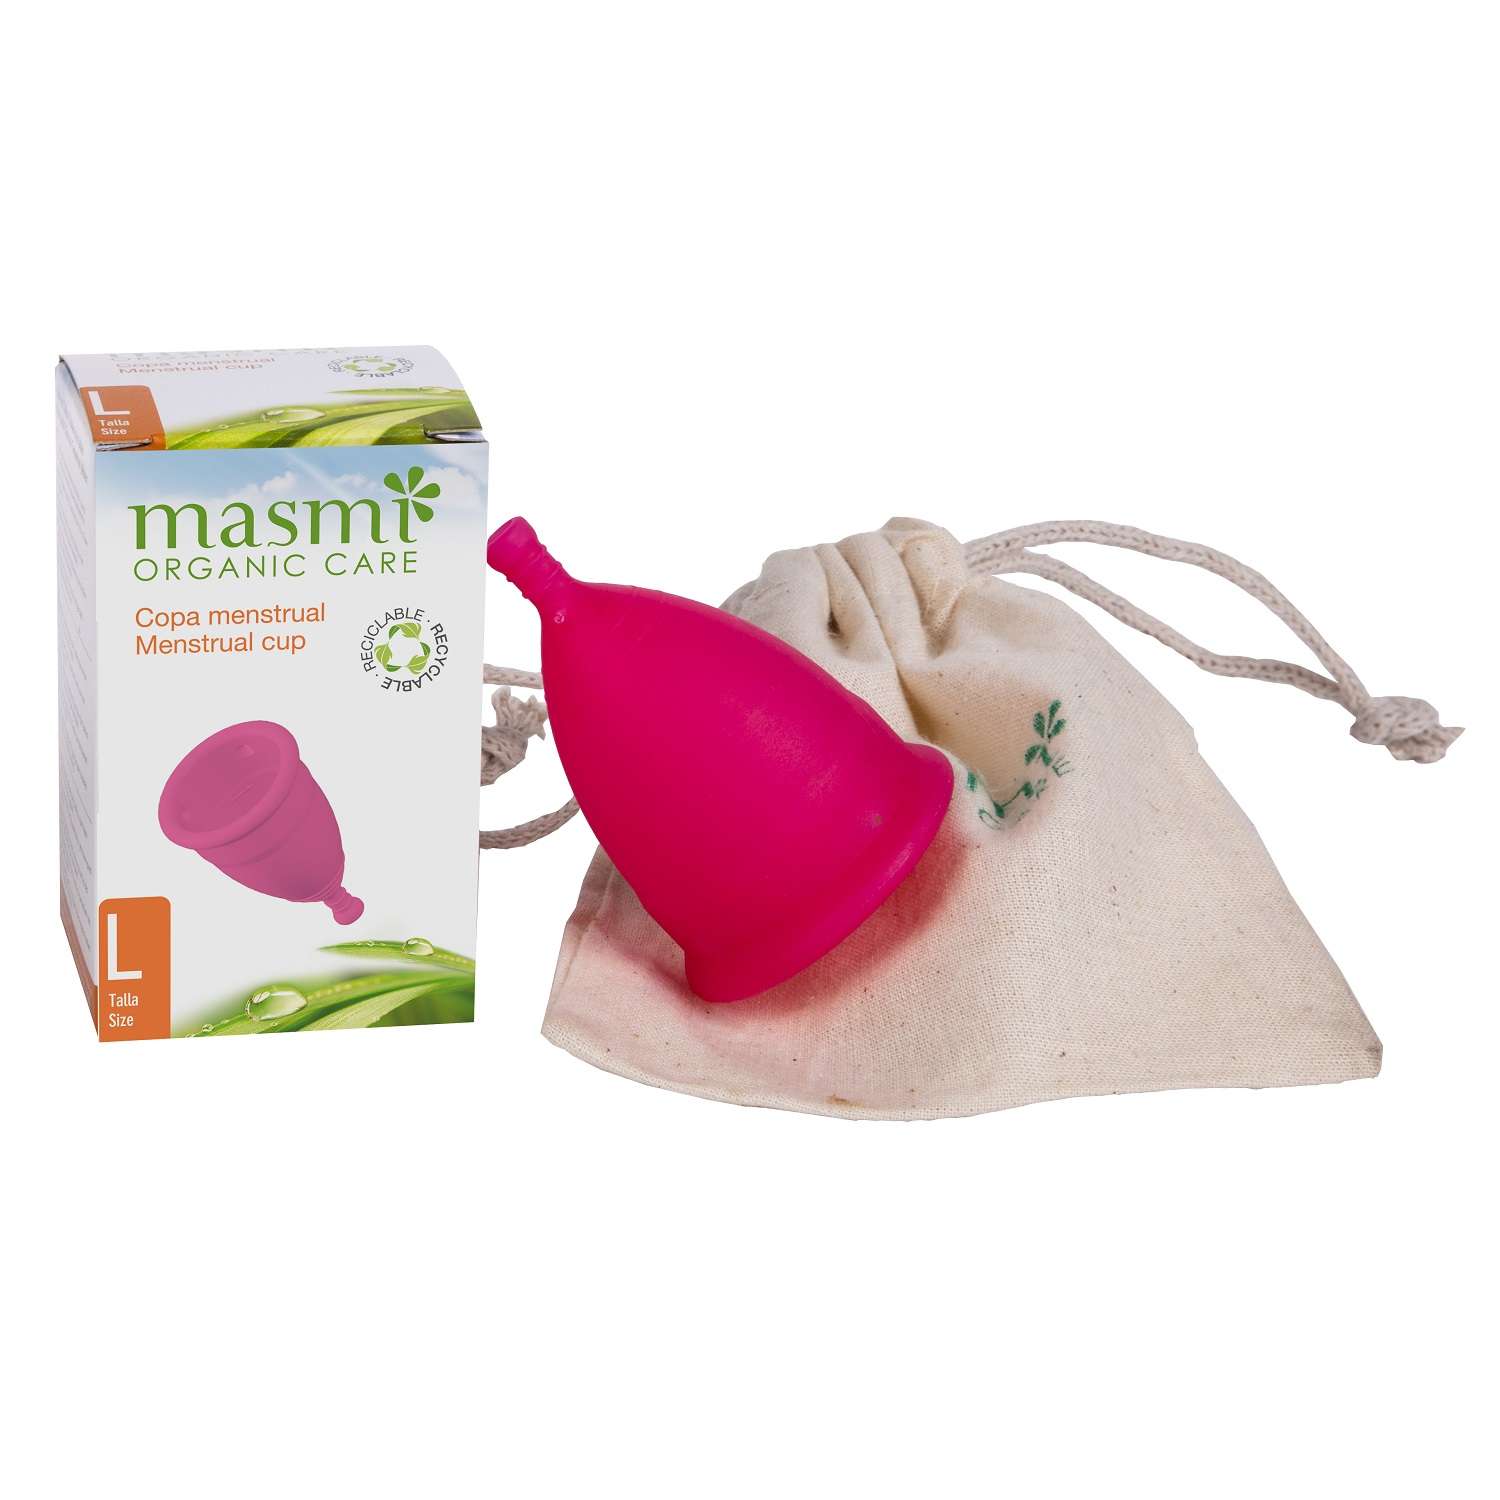 Менструальная чаша Masmi Organic Care гигиеническая размер L - фото 1